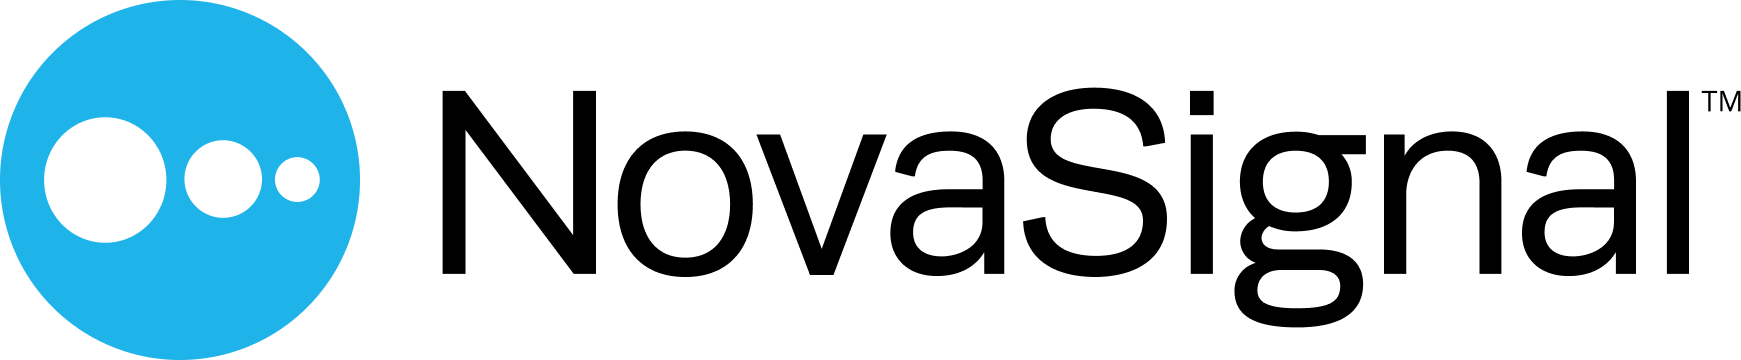 NovaSignal Logo.png